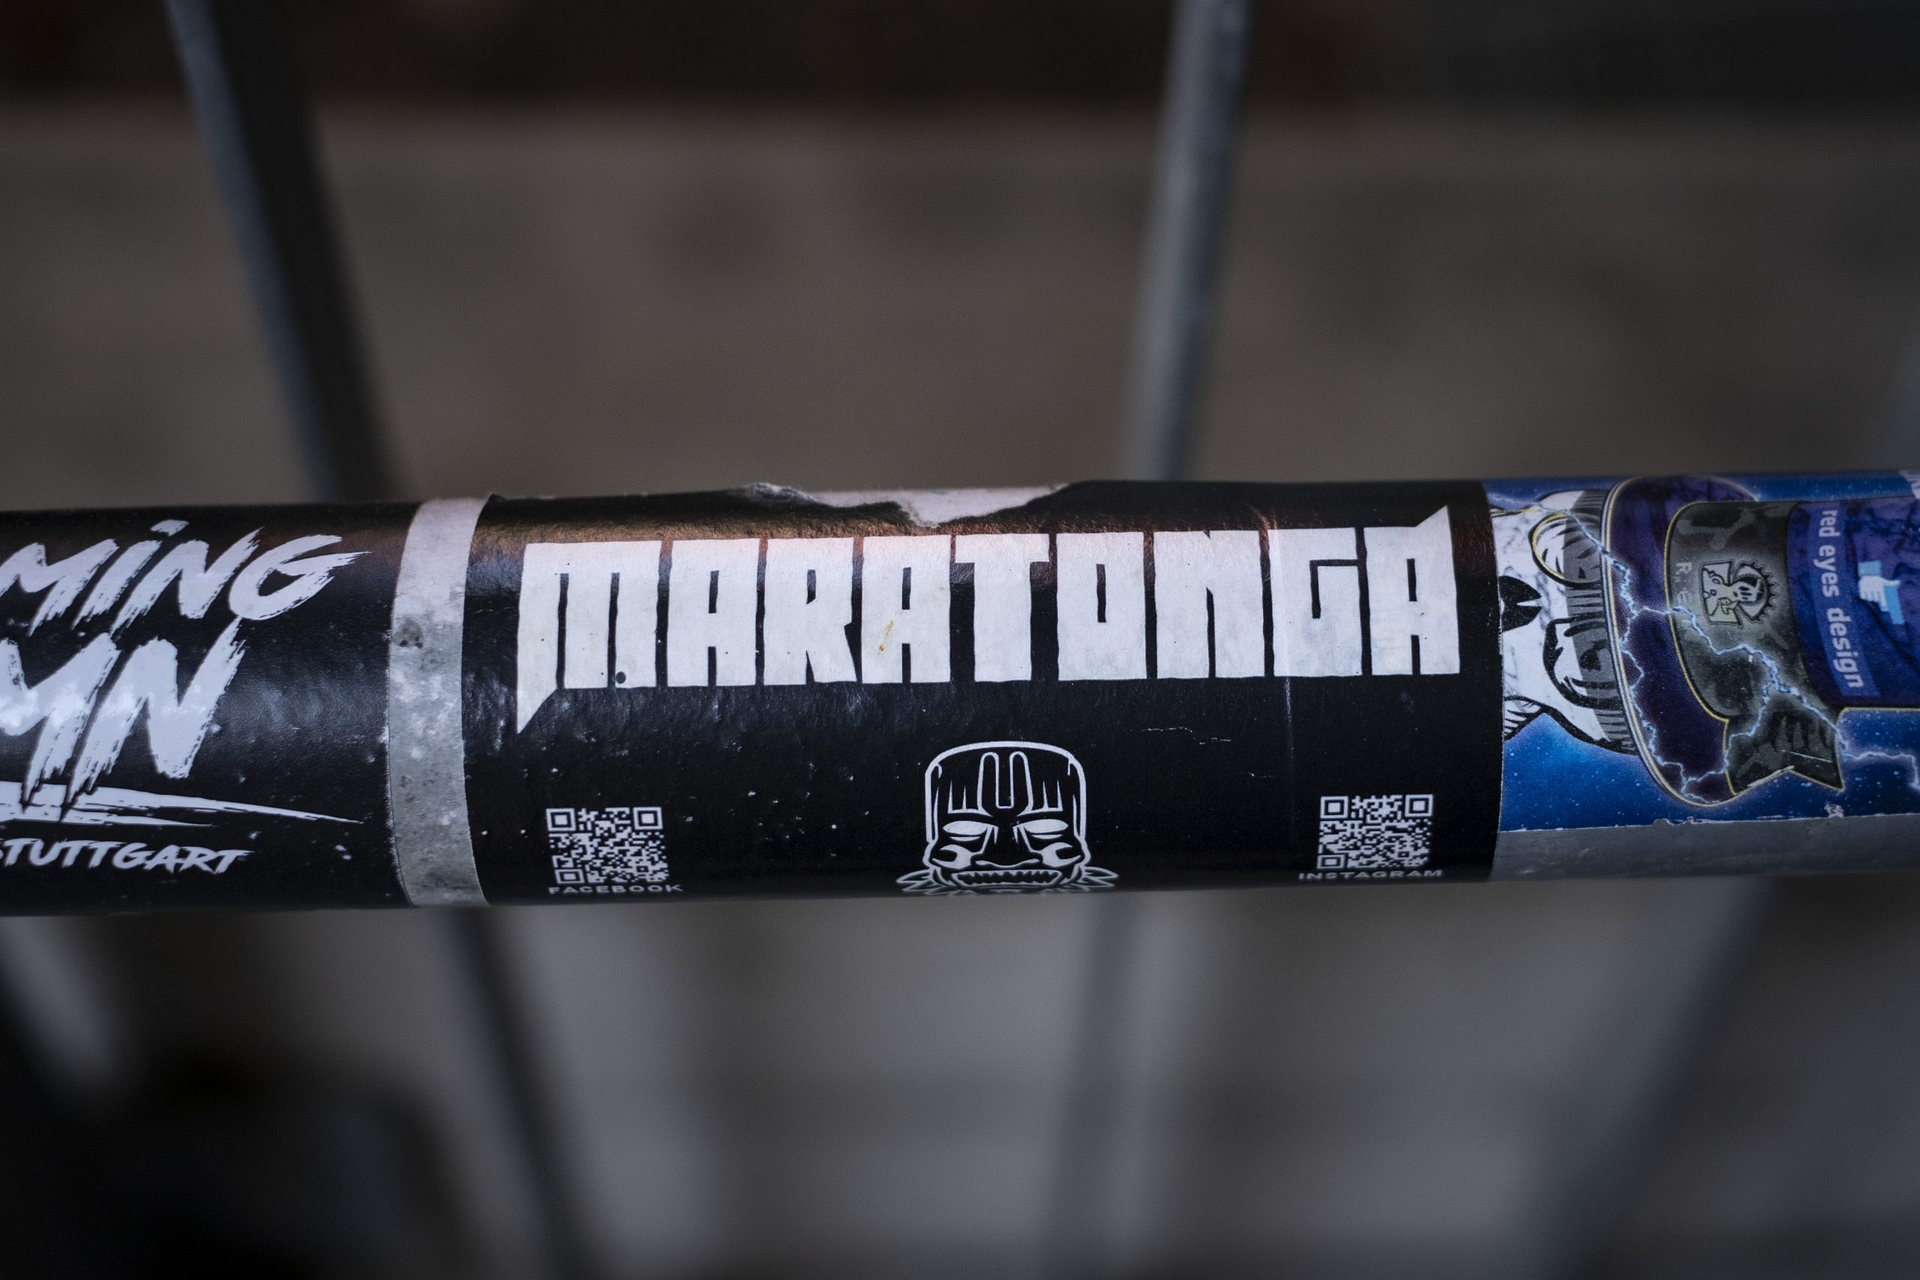 Sticker von Maratonga